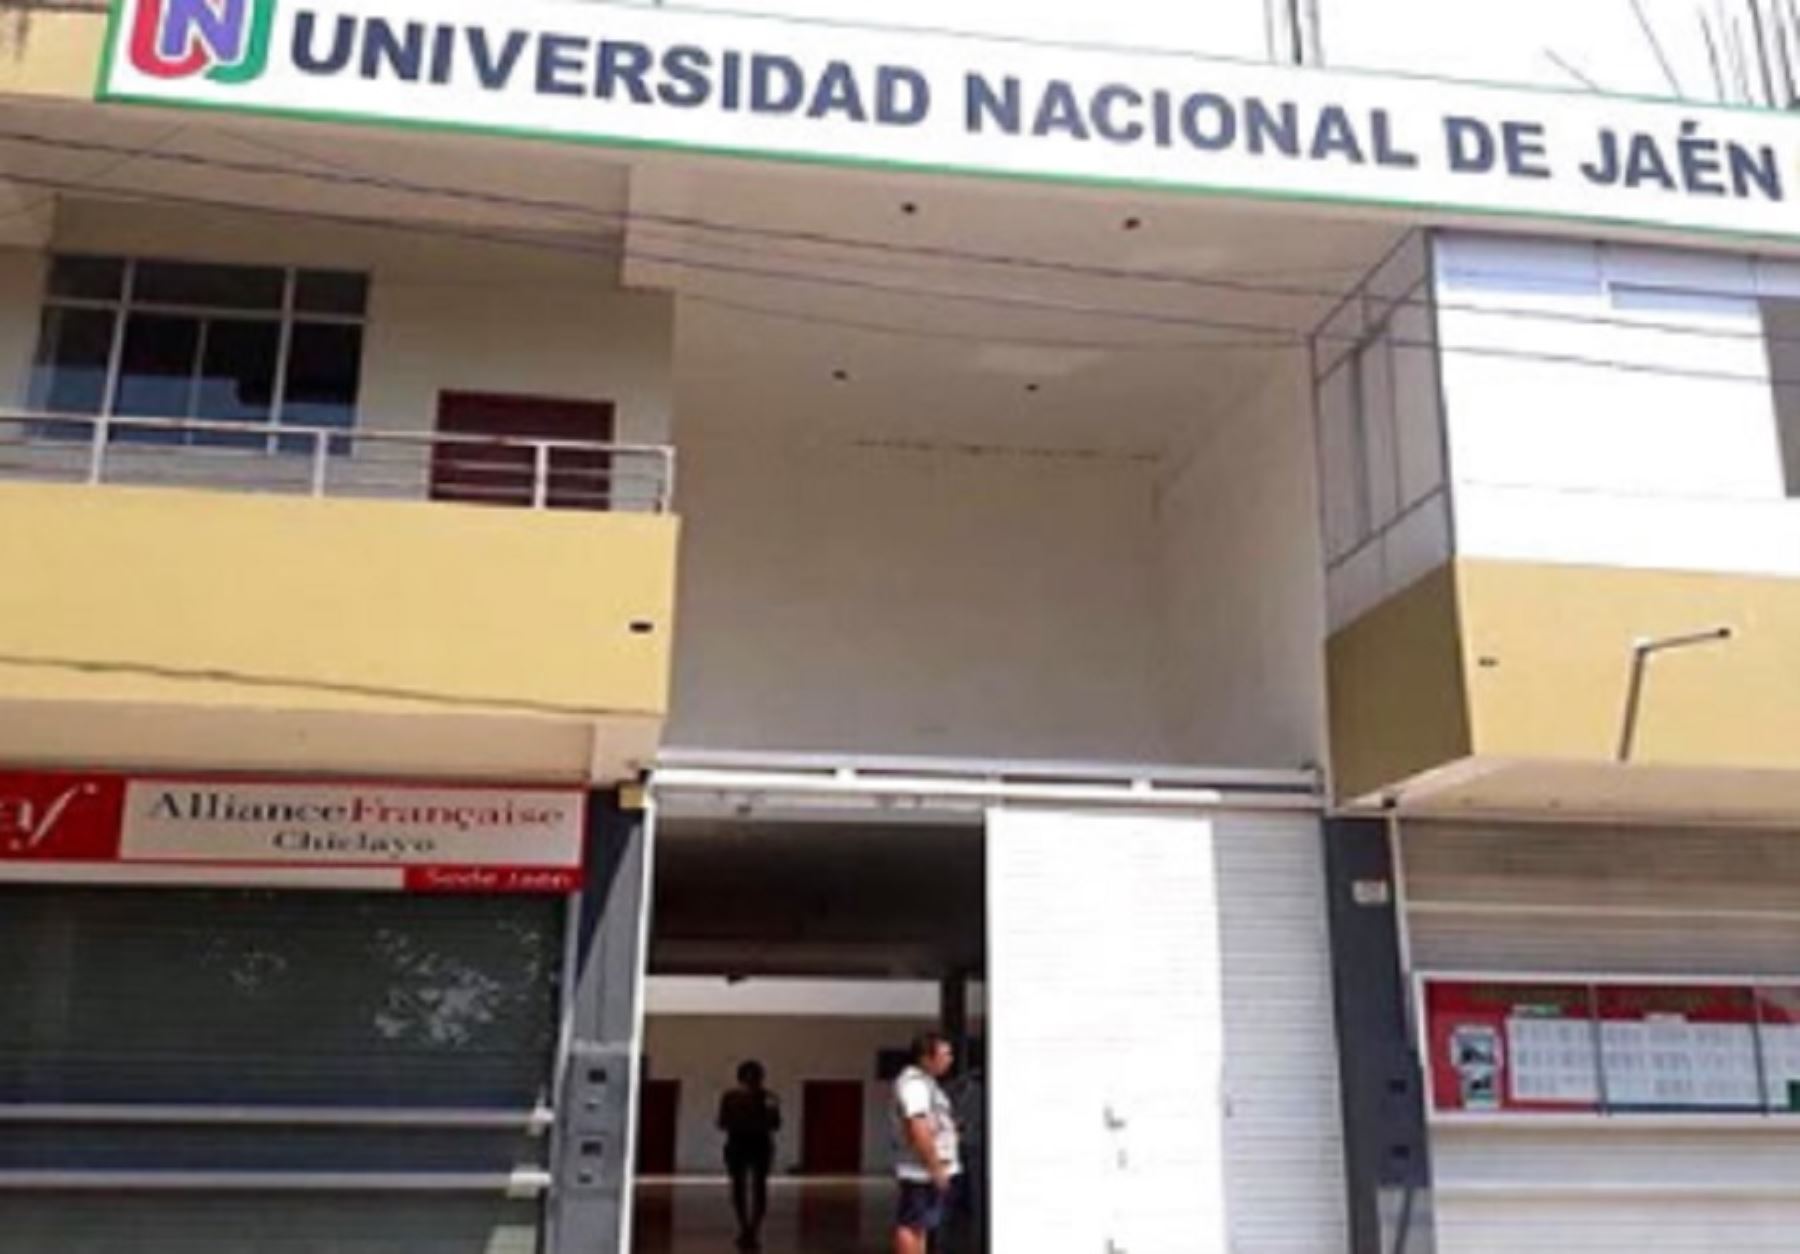 El Ministerio de Educación (Minedu), en coordinación con la Comisión Organizadora de la Universidad Nacional de Jaén (UNJ), logró que se respete el derecho de 118 postulantes que habían ingresado a esta casa de estudios superiores mediante un examen virtual, que fue anulado el pasado 7 de marzo.